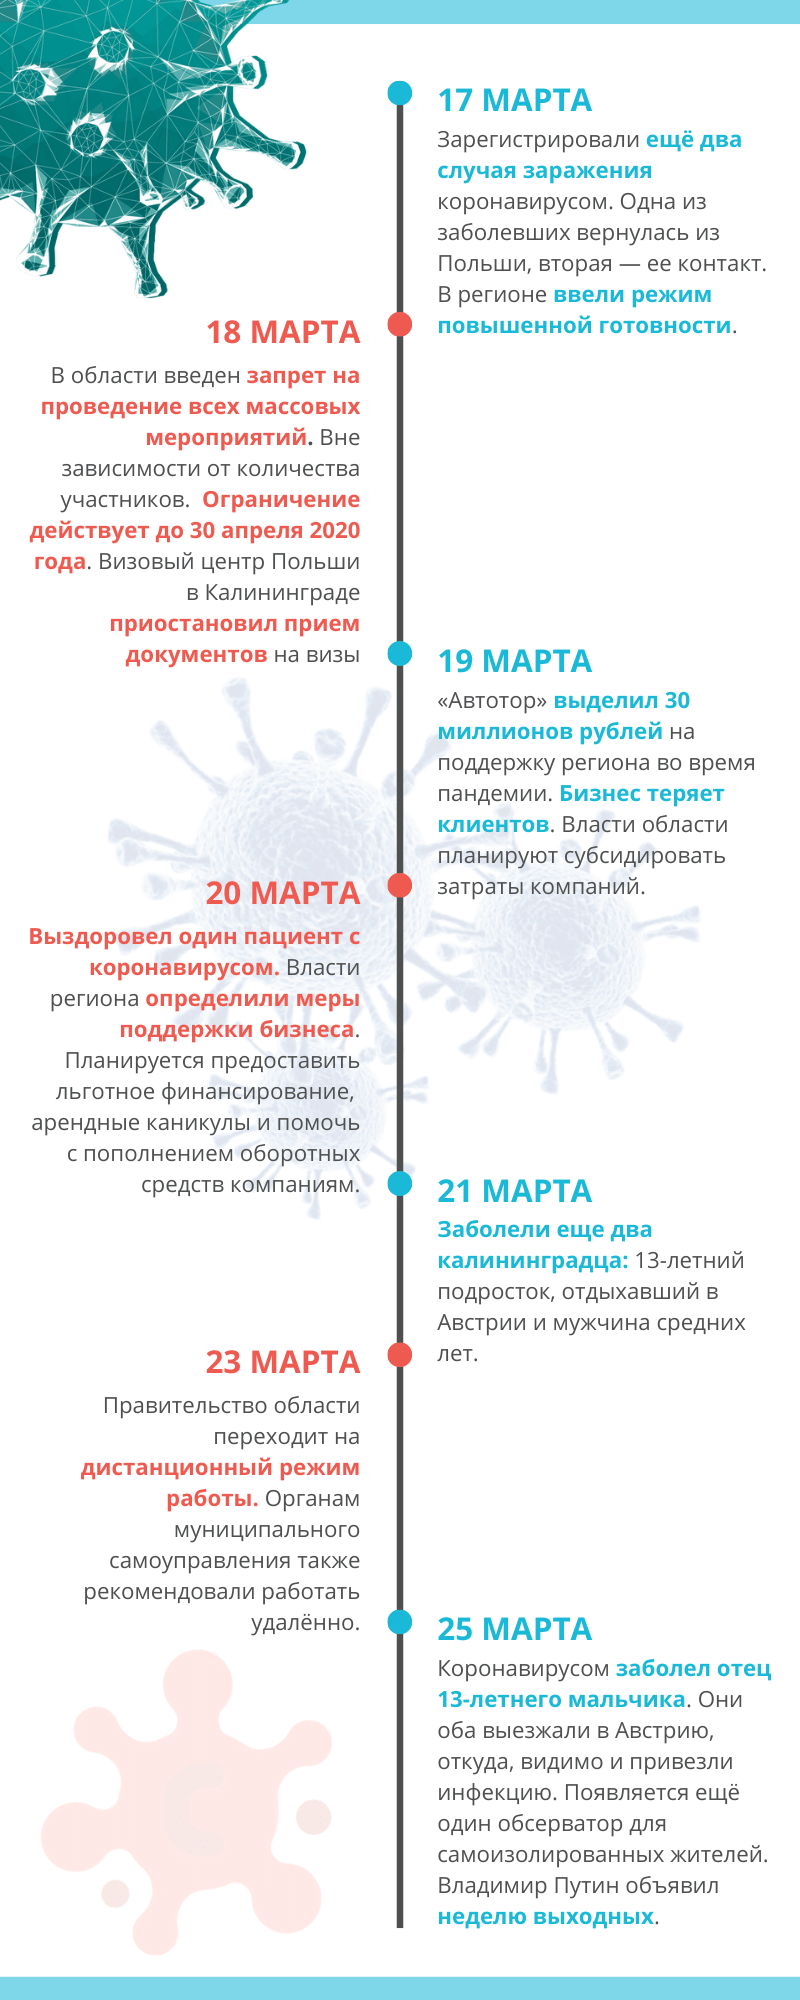 Covid-19 в Калининграде: полная хроника событий за месяц. Инфографика